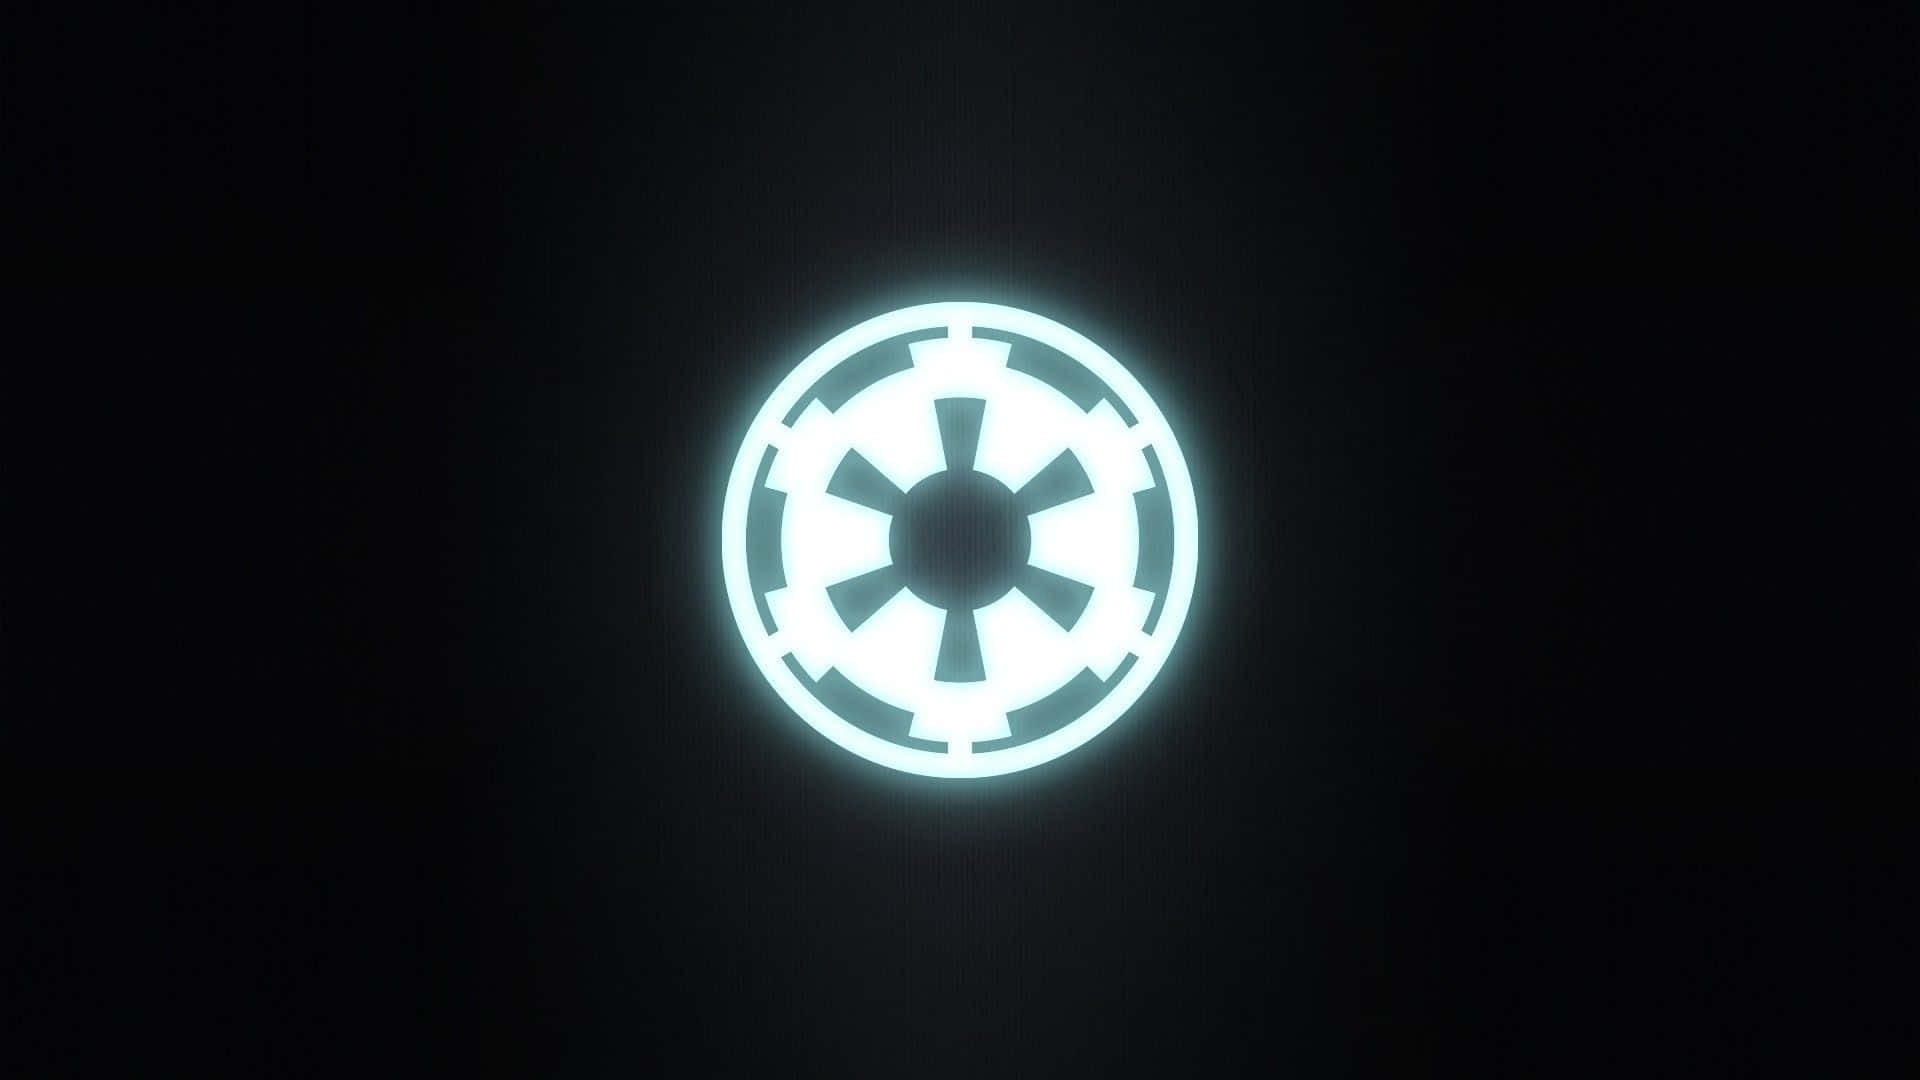 Denikoniska Star Wars Imperiet Logotypen. Wallpaper